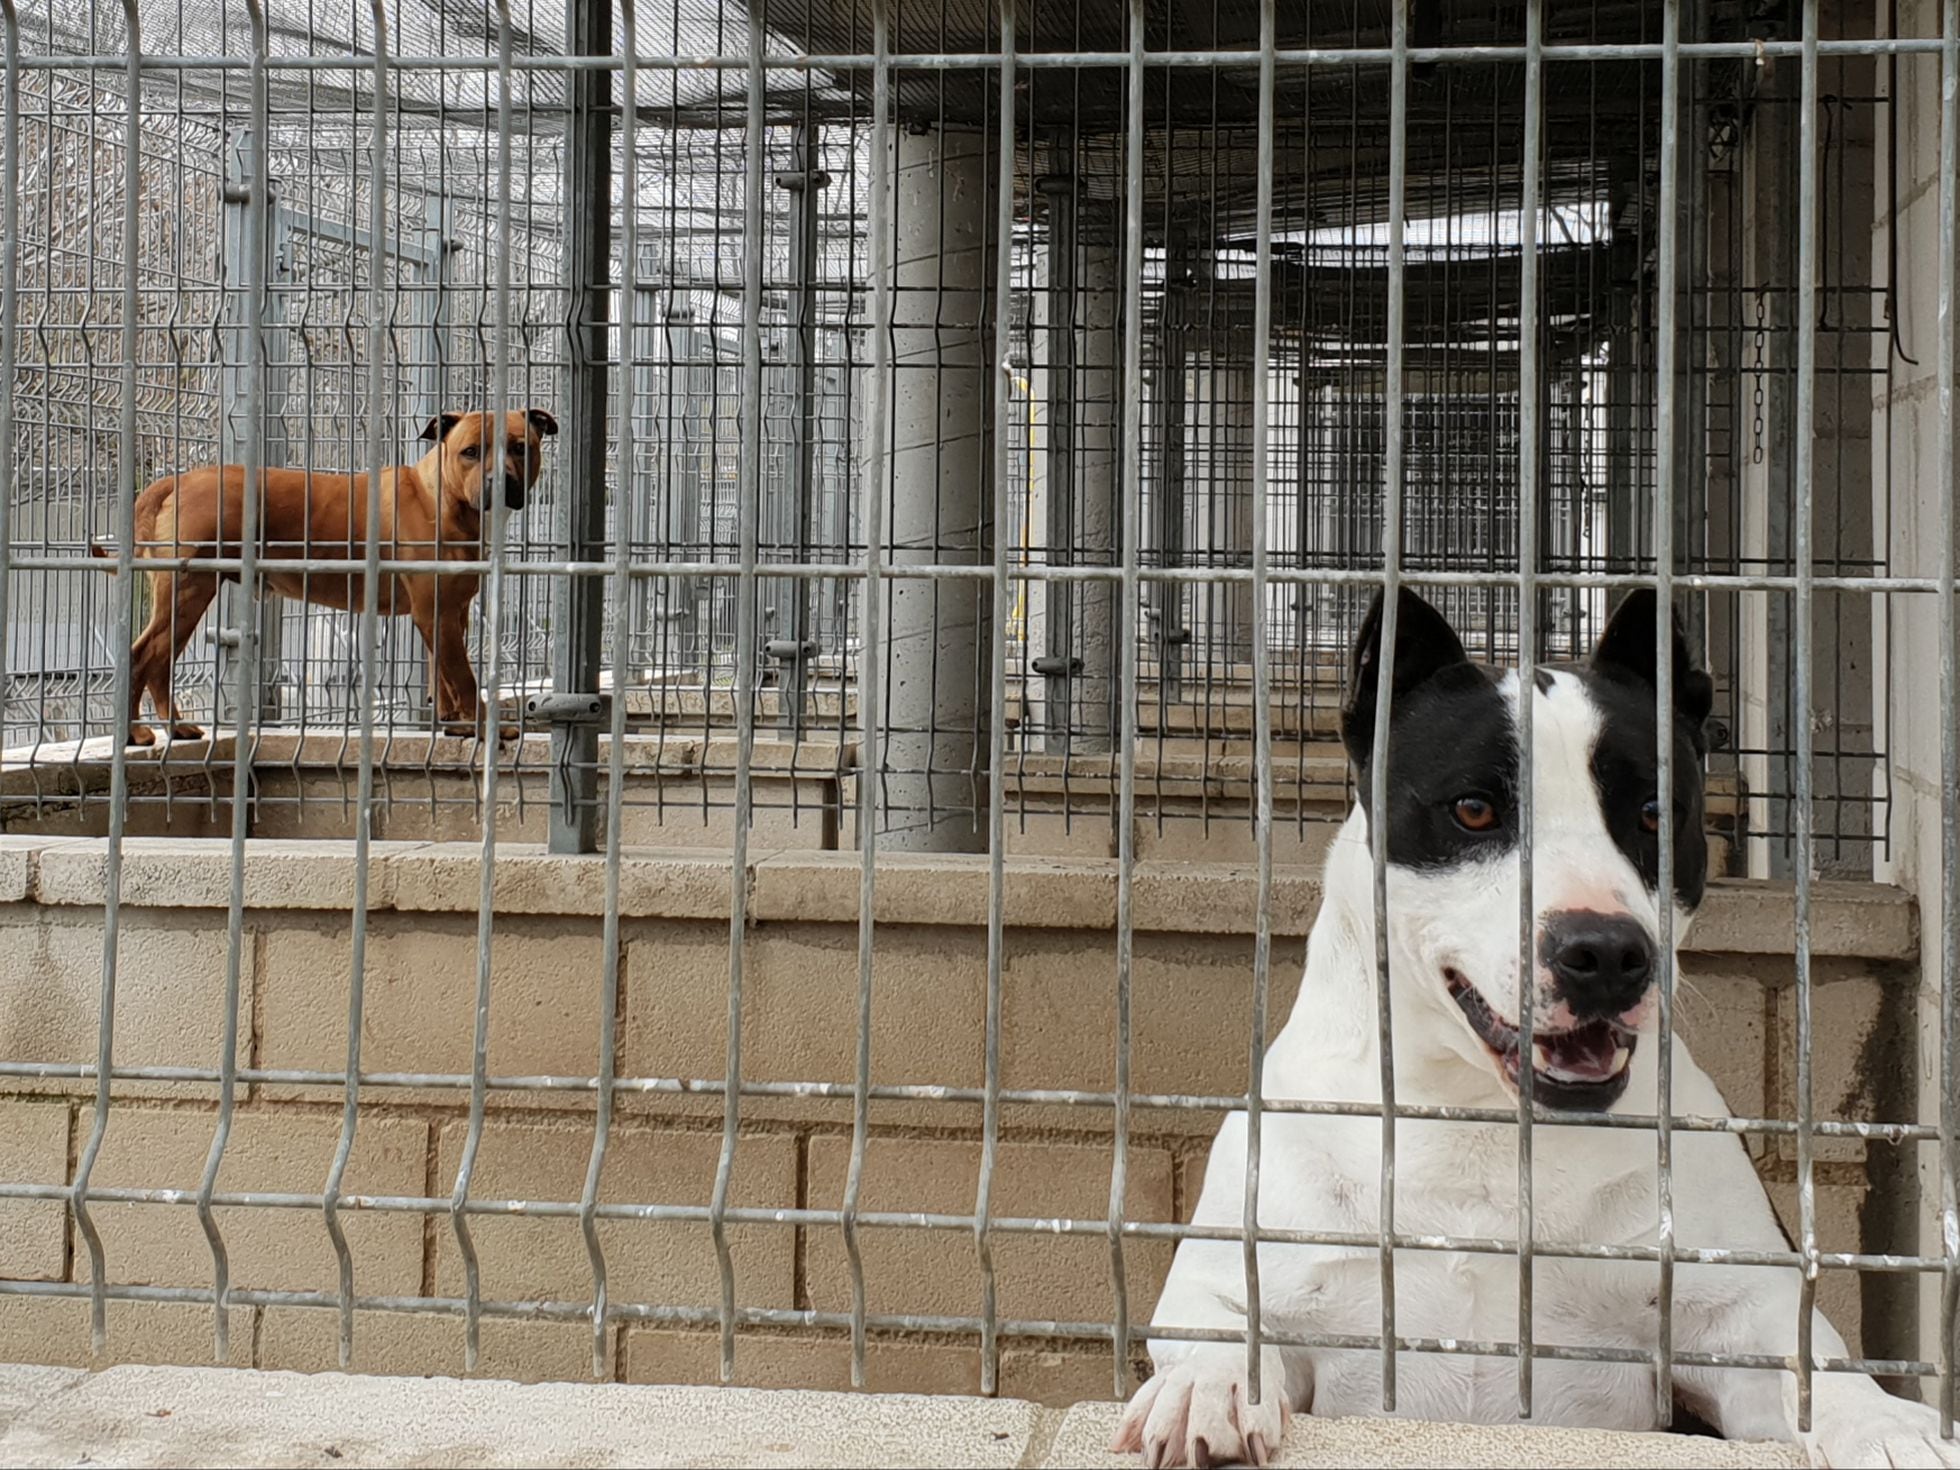 de protección animal: El reto de detectar los perros cuando desaparezca la lista razas peligrosas | Medio Ambiente | EL PAÍS